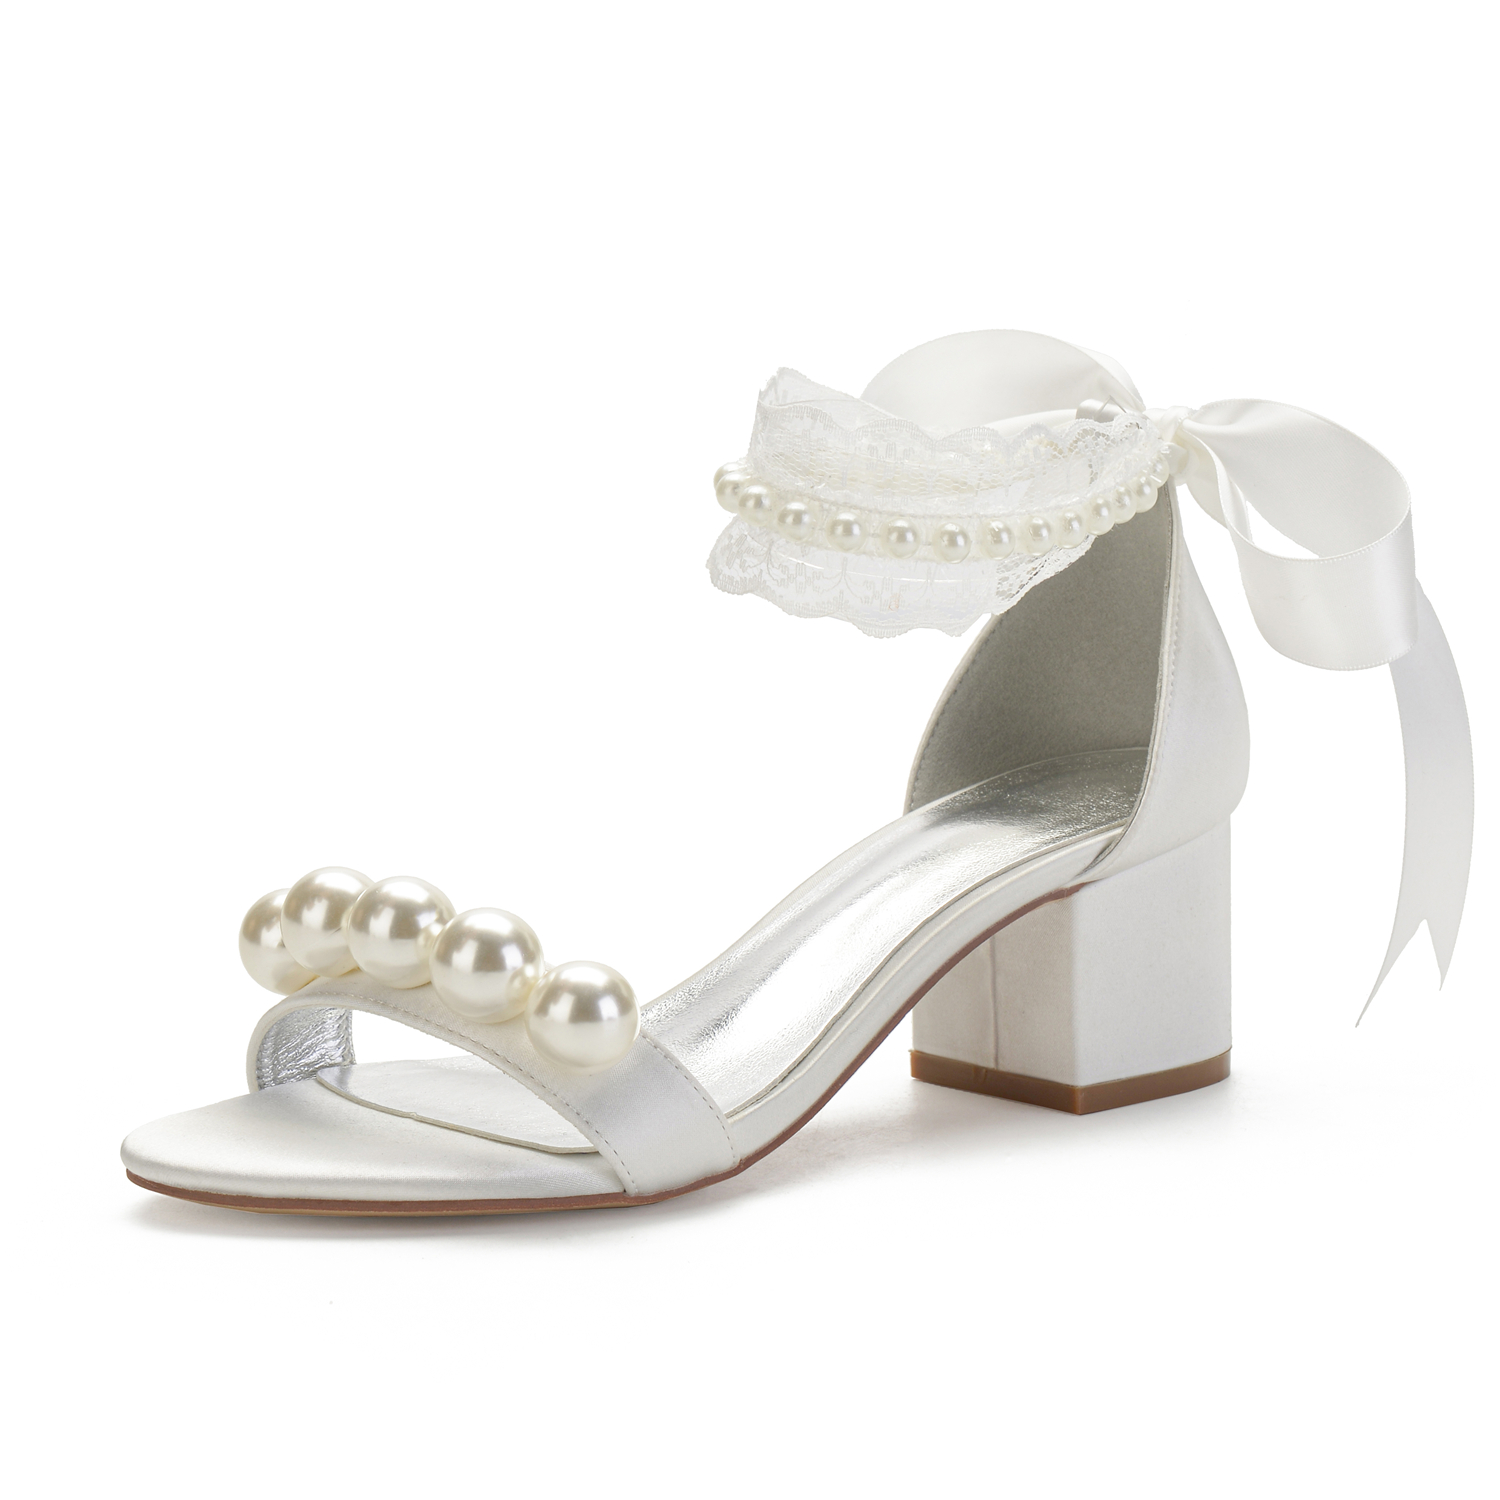 Elegant white ivory bridal shoes satin wedding sandals